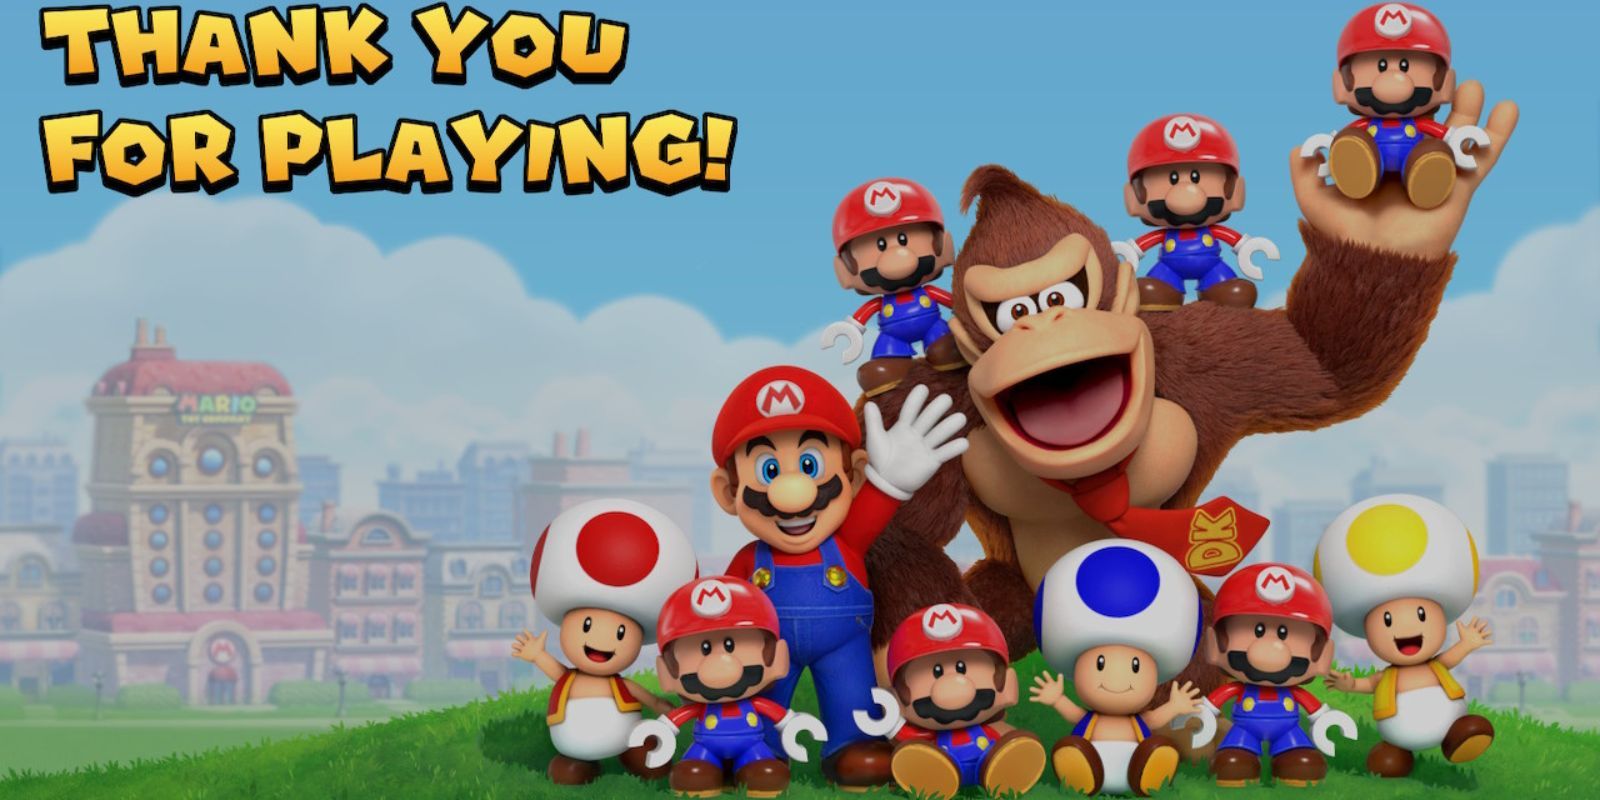 Nintendo Announces Mario Vs. Donkey Kong Remake